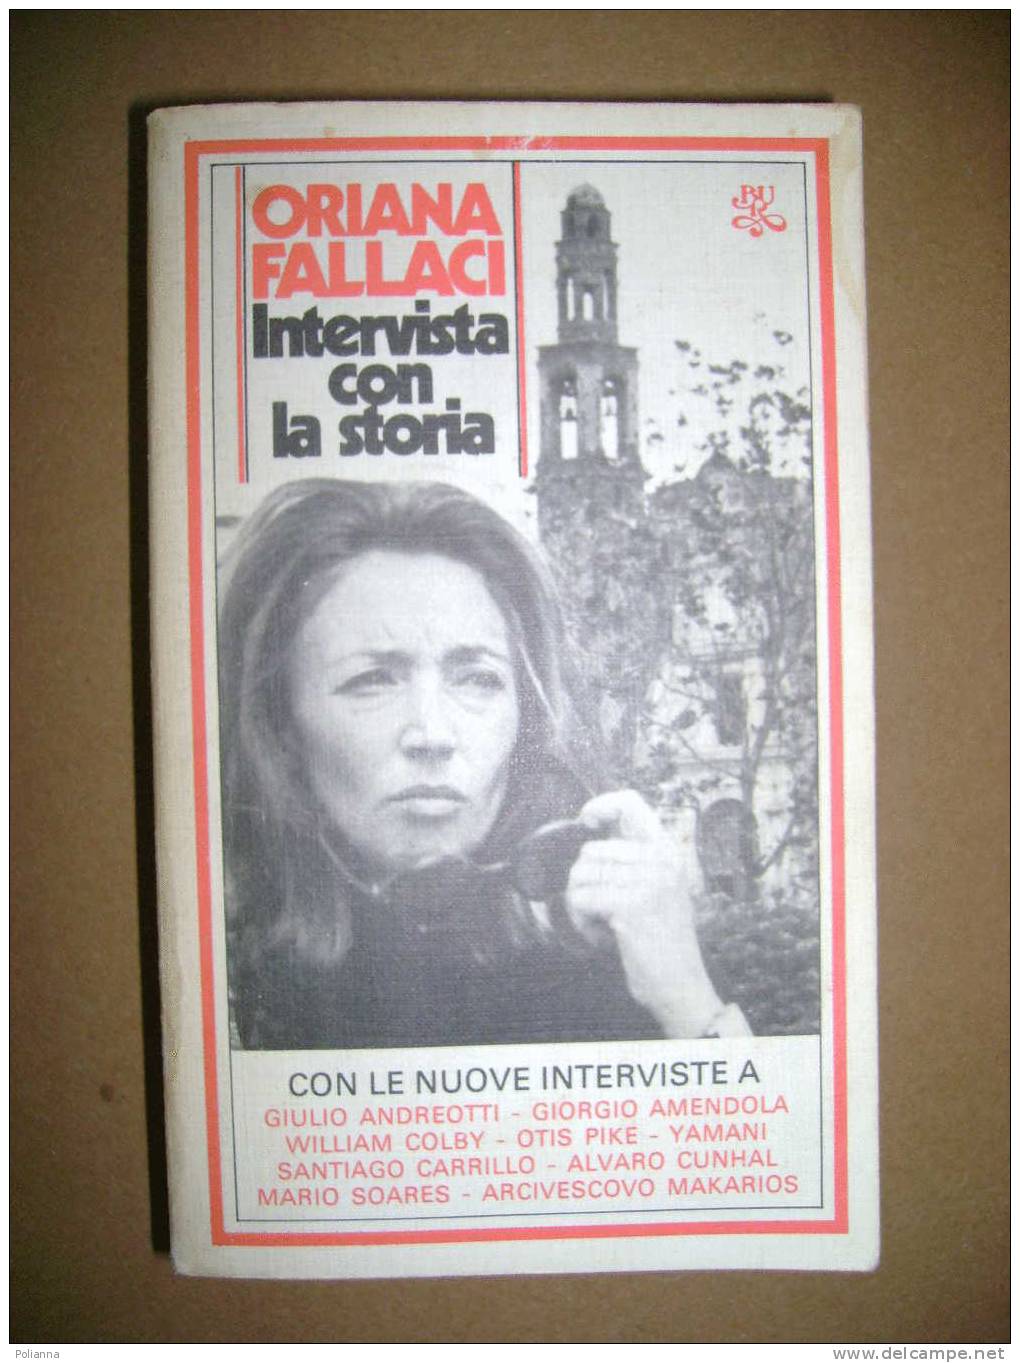 PAC/20 Oriana Fallaci INTERVISTA CON LA STORIA Bur Rizzoli 1980 - Journalismus